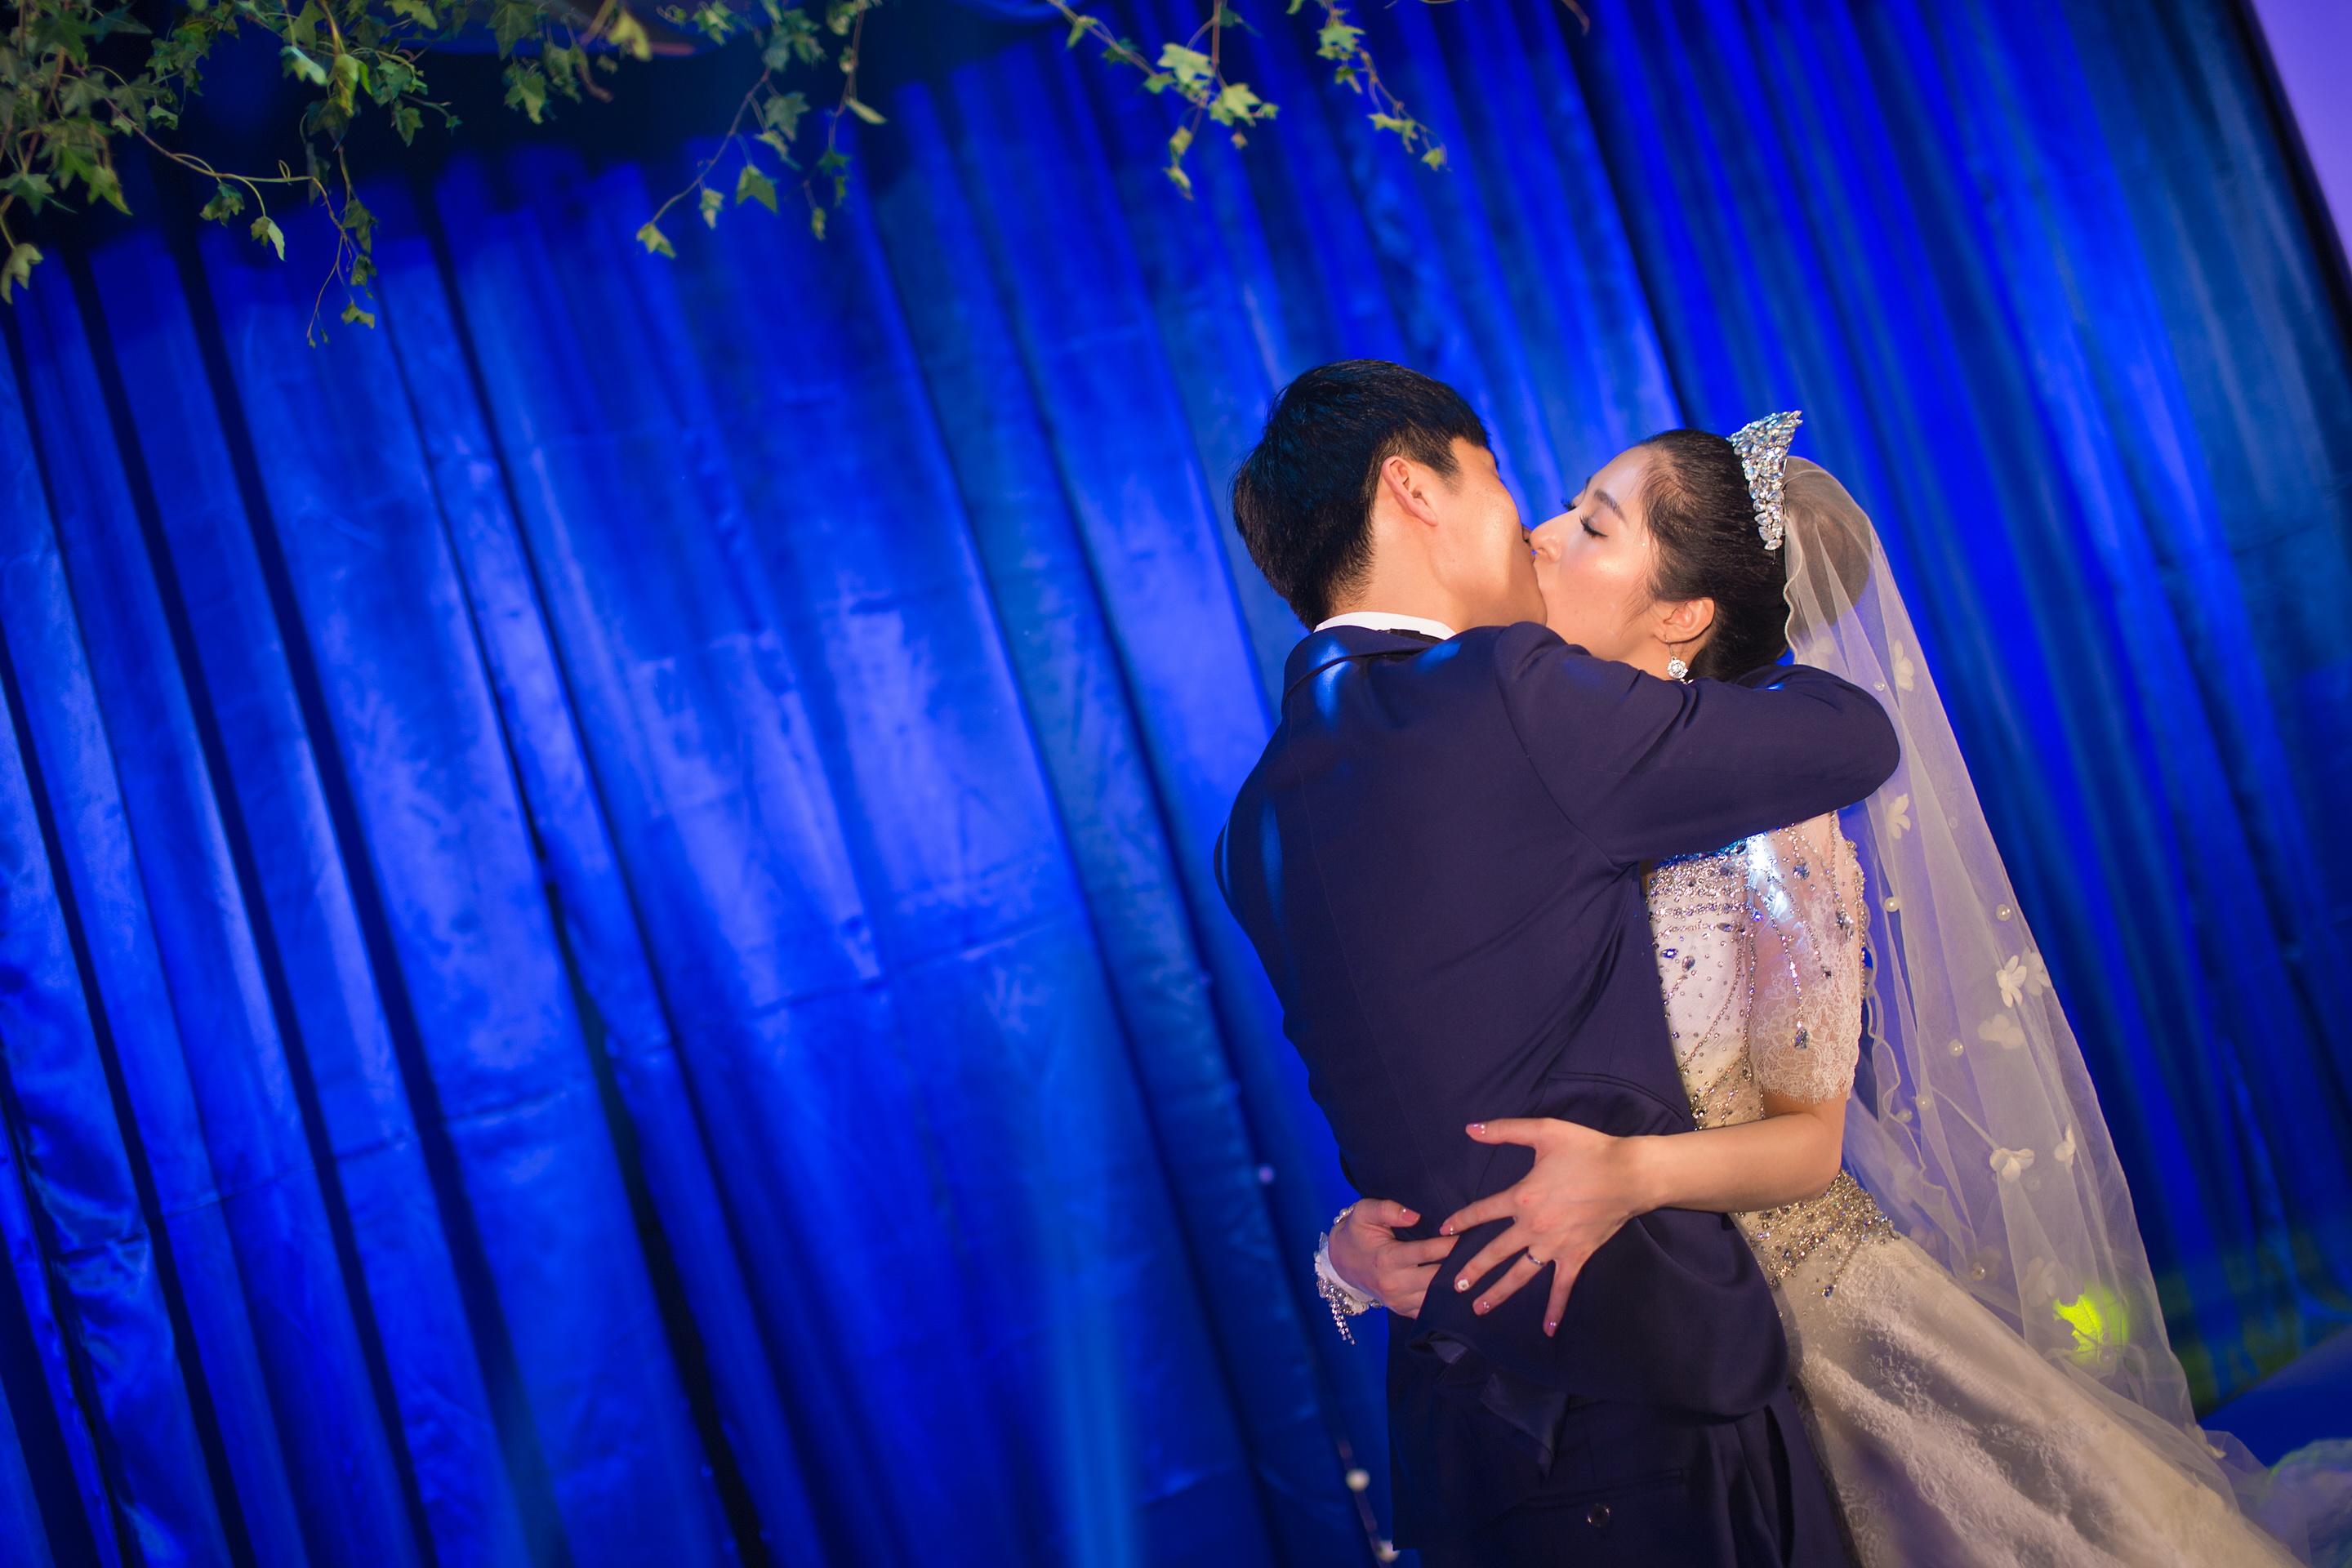 新娘他的亲吻对愿的年轻人的人纵向 库存照片. 图片 包括有 女性, 订婚, 穿戴, 情感, 亲吻, 享用 - 20860062